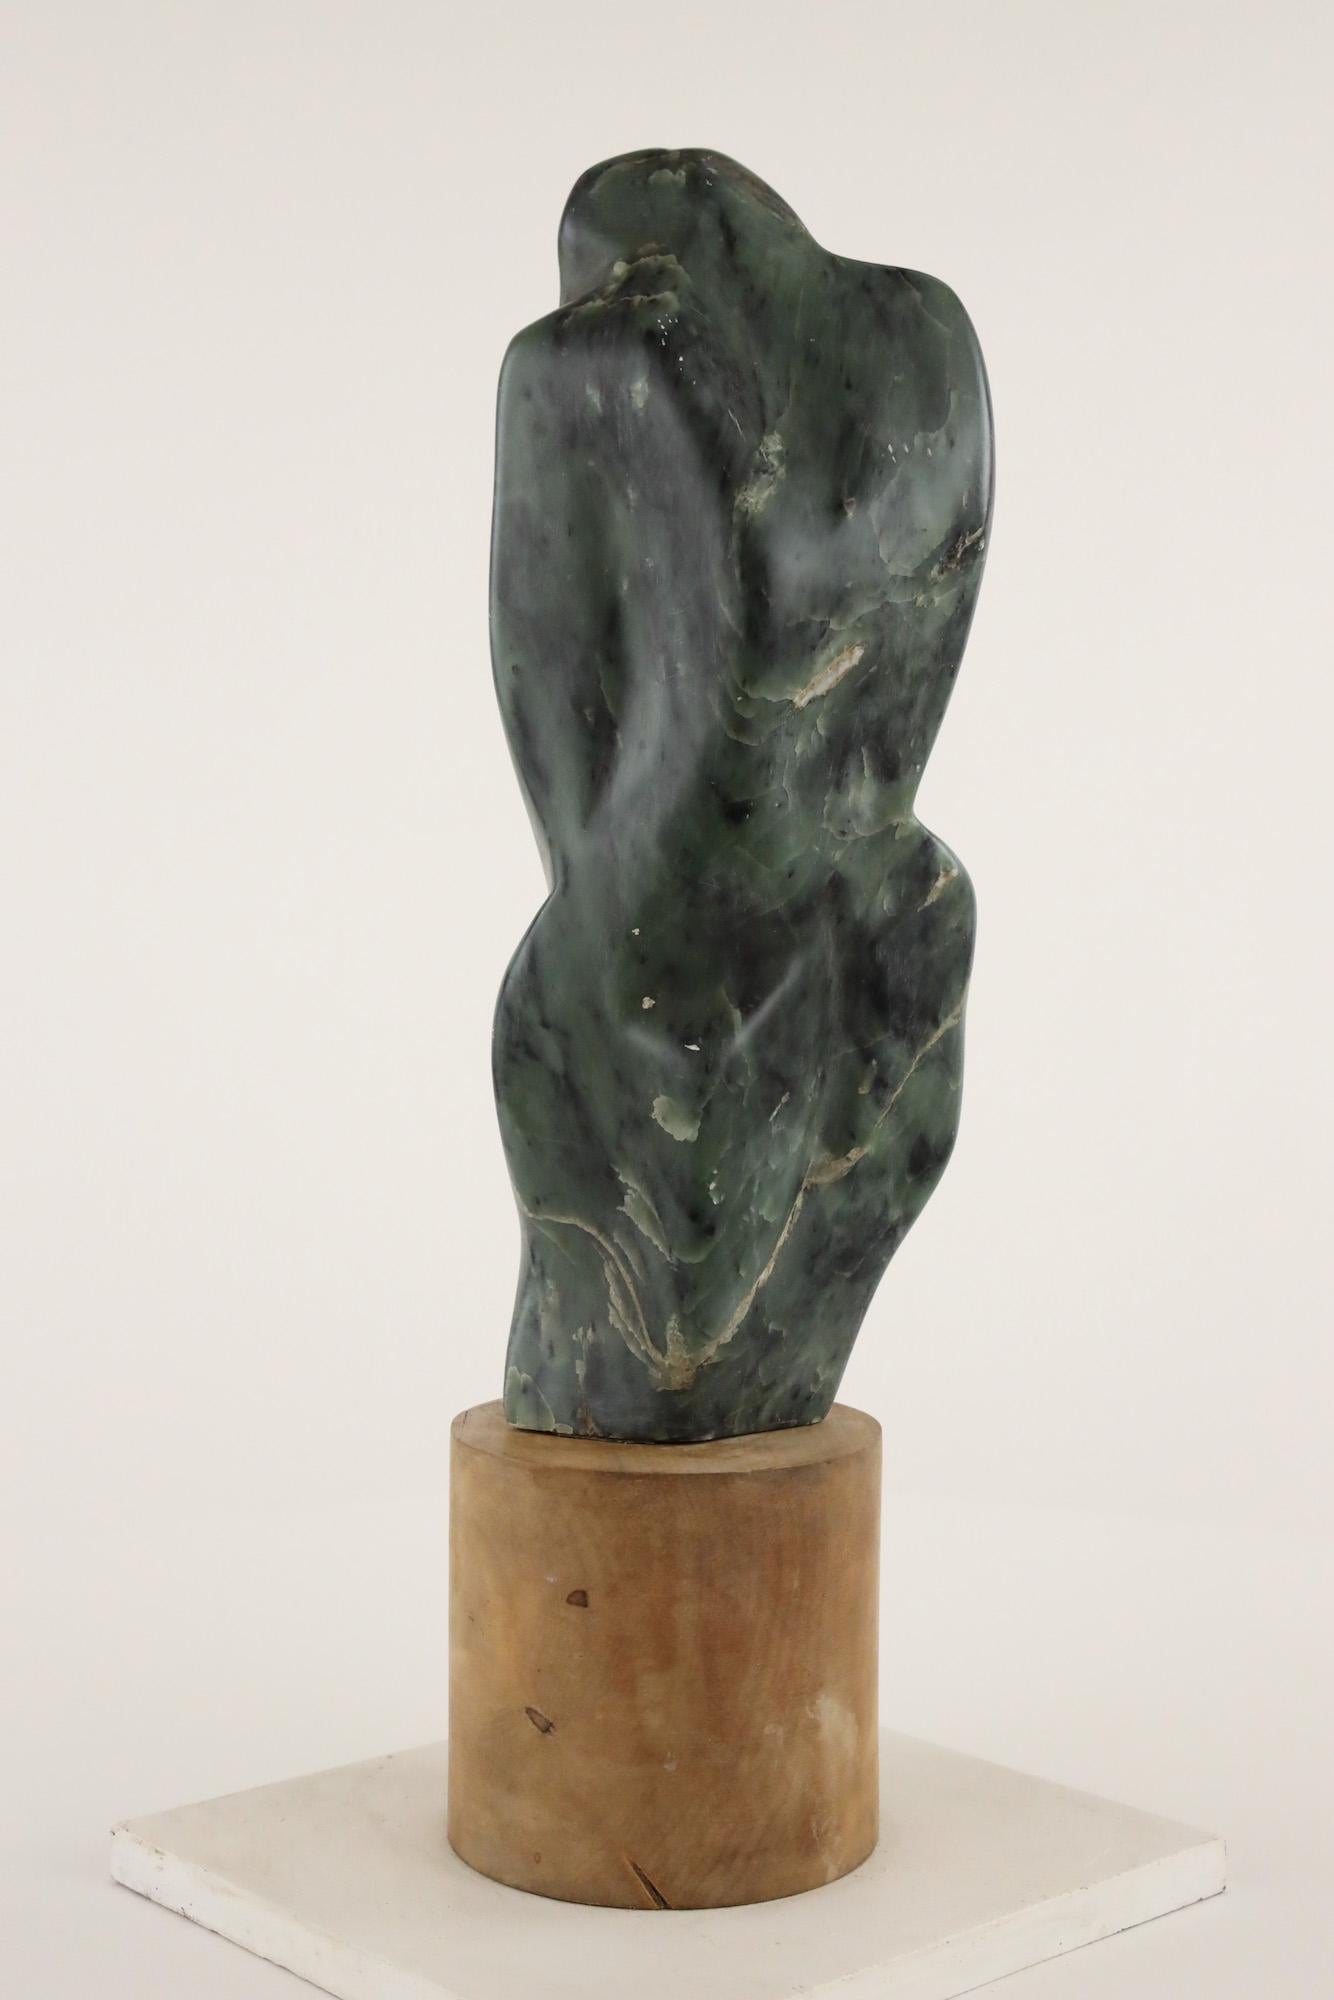 L'ombre est une sculpture en pierre unique de l'artiste contemporain Yann Guillon, dont les dimensions sont de 36 × 10 × 16 cm (14,2 × 3,9 × 6,3 in). Cette œuvre est vendue avec un socle en bois.
La sculpture est signée et accompagnée d'un